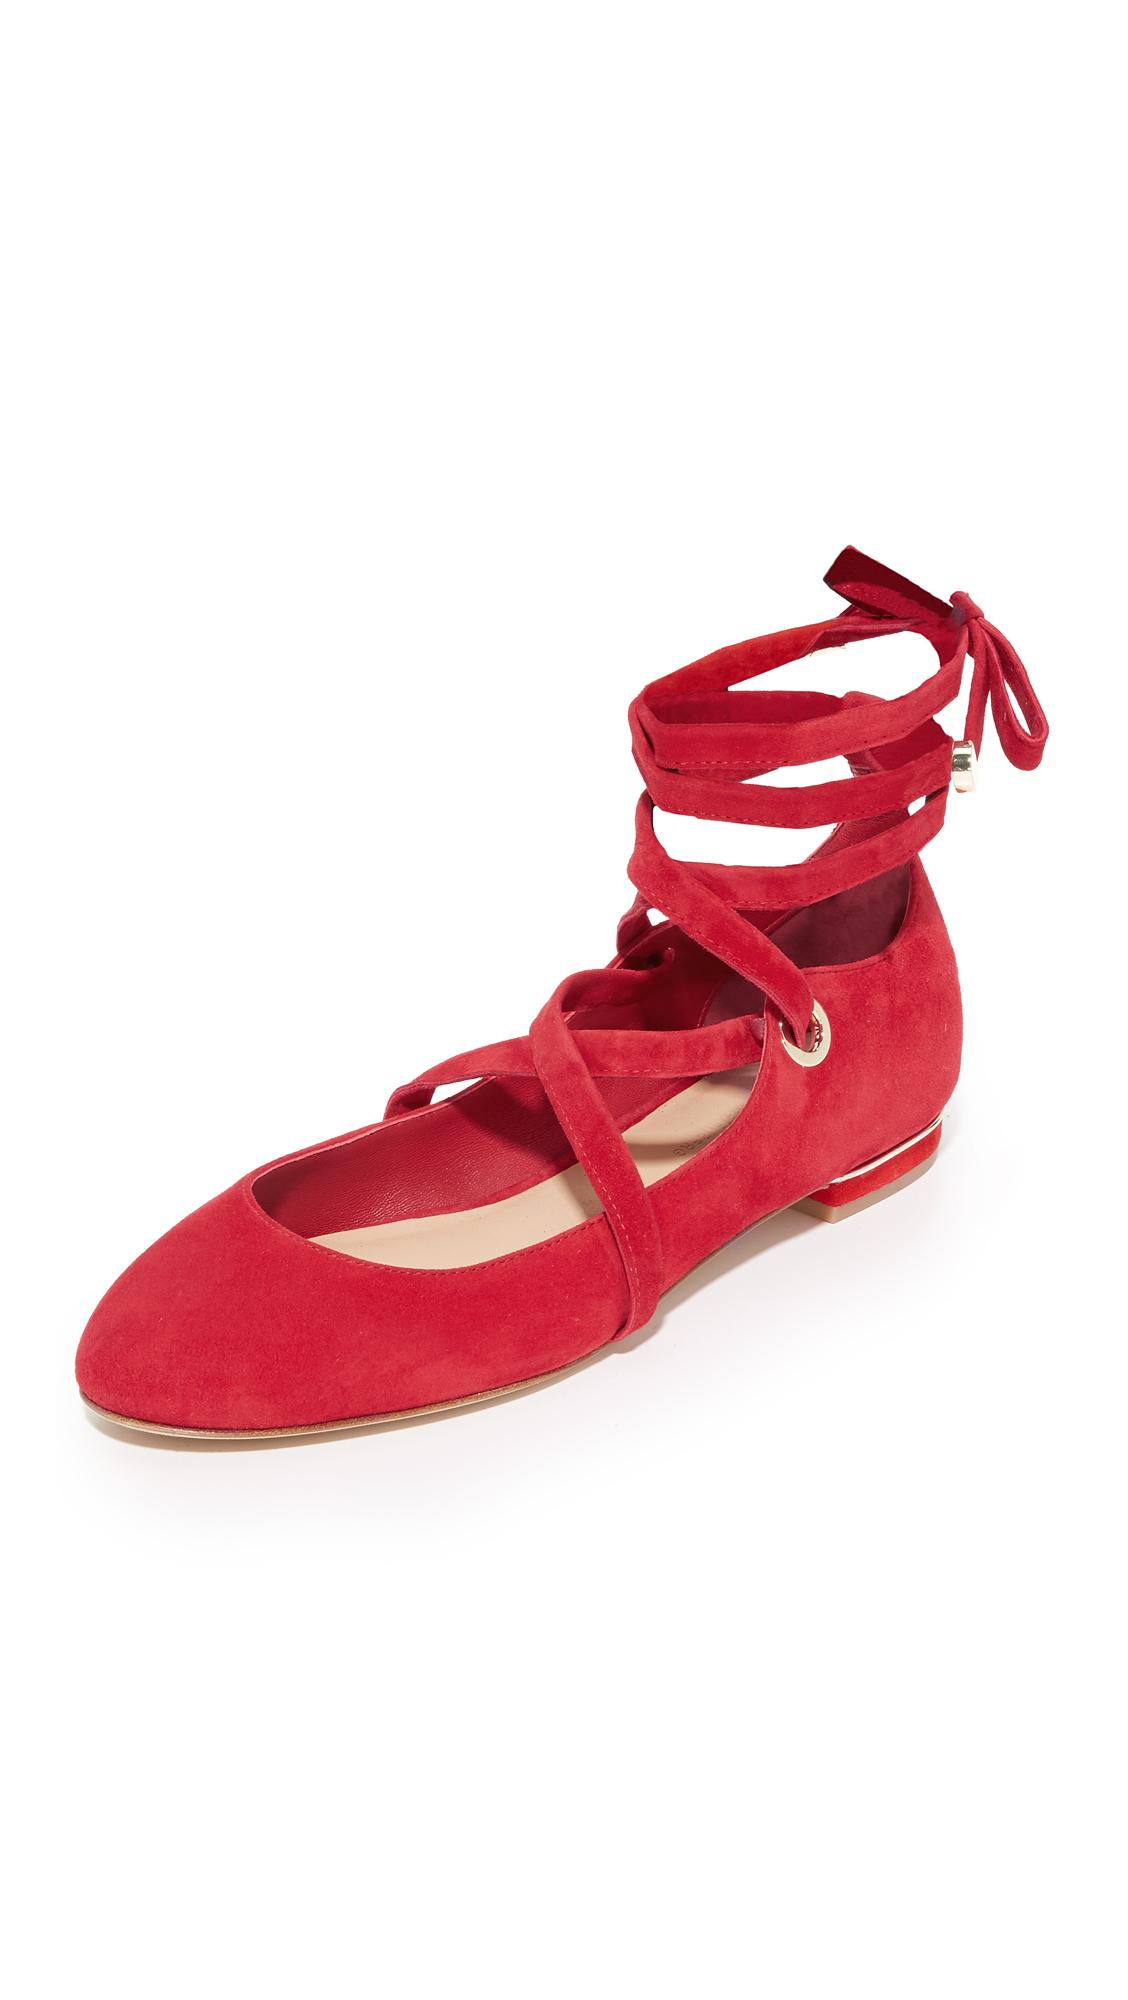 Diane von Furstenberg Dakar Lace Up Ballet Flats in Red | Lyst